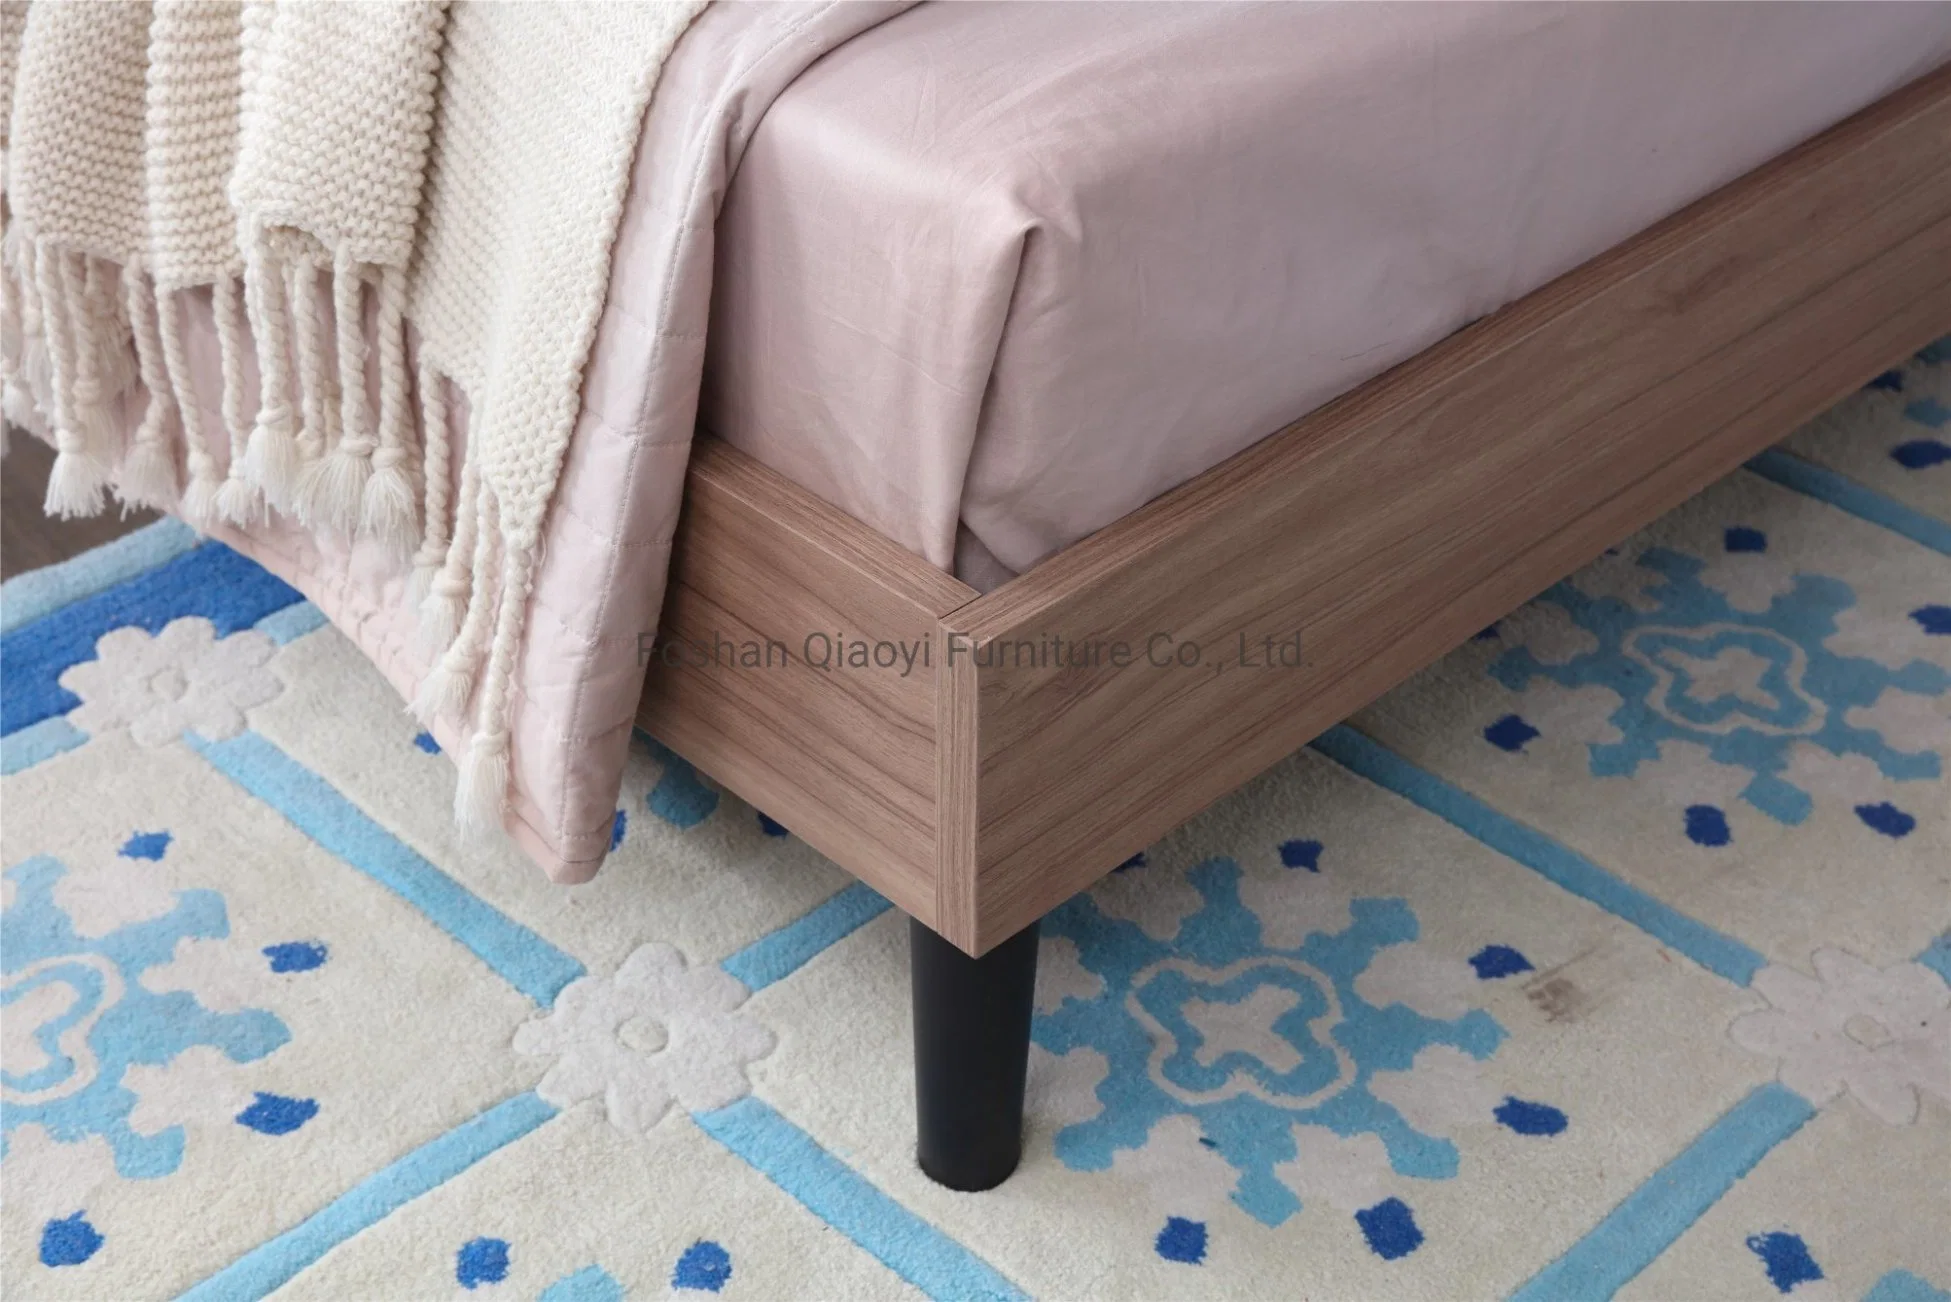 Gros meubles en bois pour chambre d'hôtel, maison, chambre à coucher, avec design moderne et personnalisable